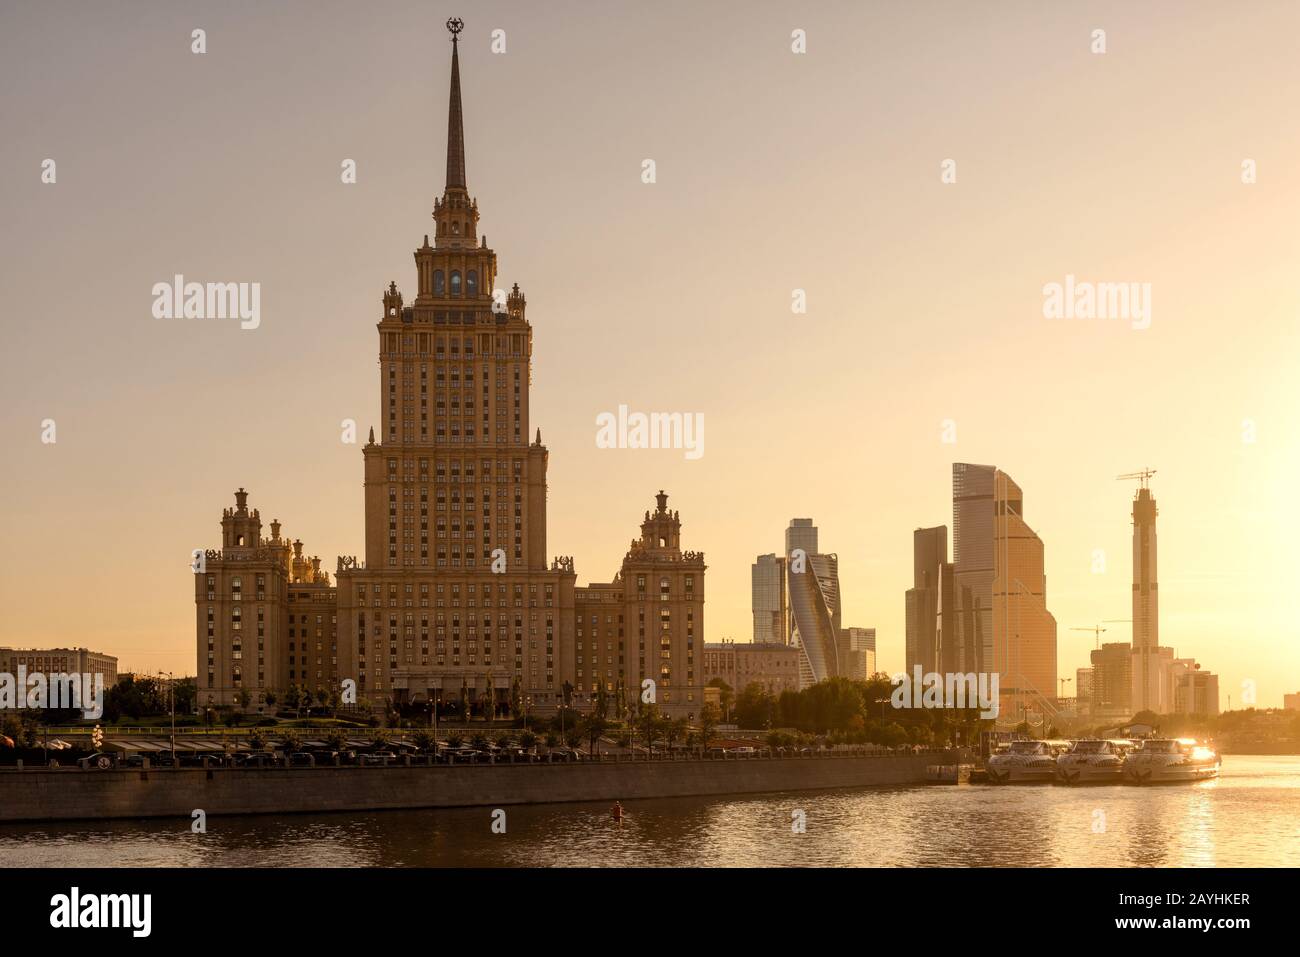 Moskau Stalin Wolkenkratzer Radisson Hotel (ehemalige Ukraine) bei Sonnenuntergang, Russland. Es ist das Wahrzeichen Moskaus. Sonniger Blick auf den Moskva Fluss mit Moskau-Stadt Stockfoto